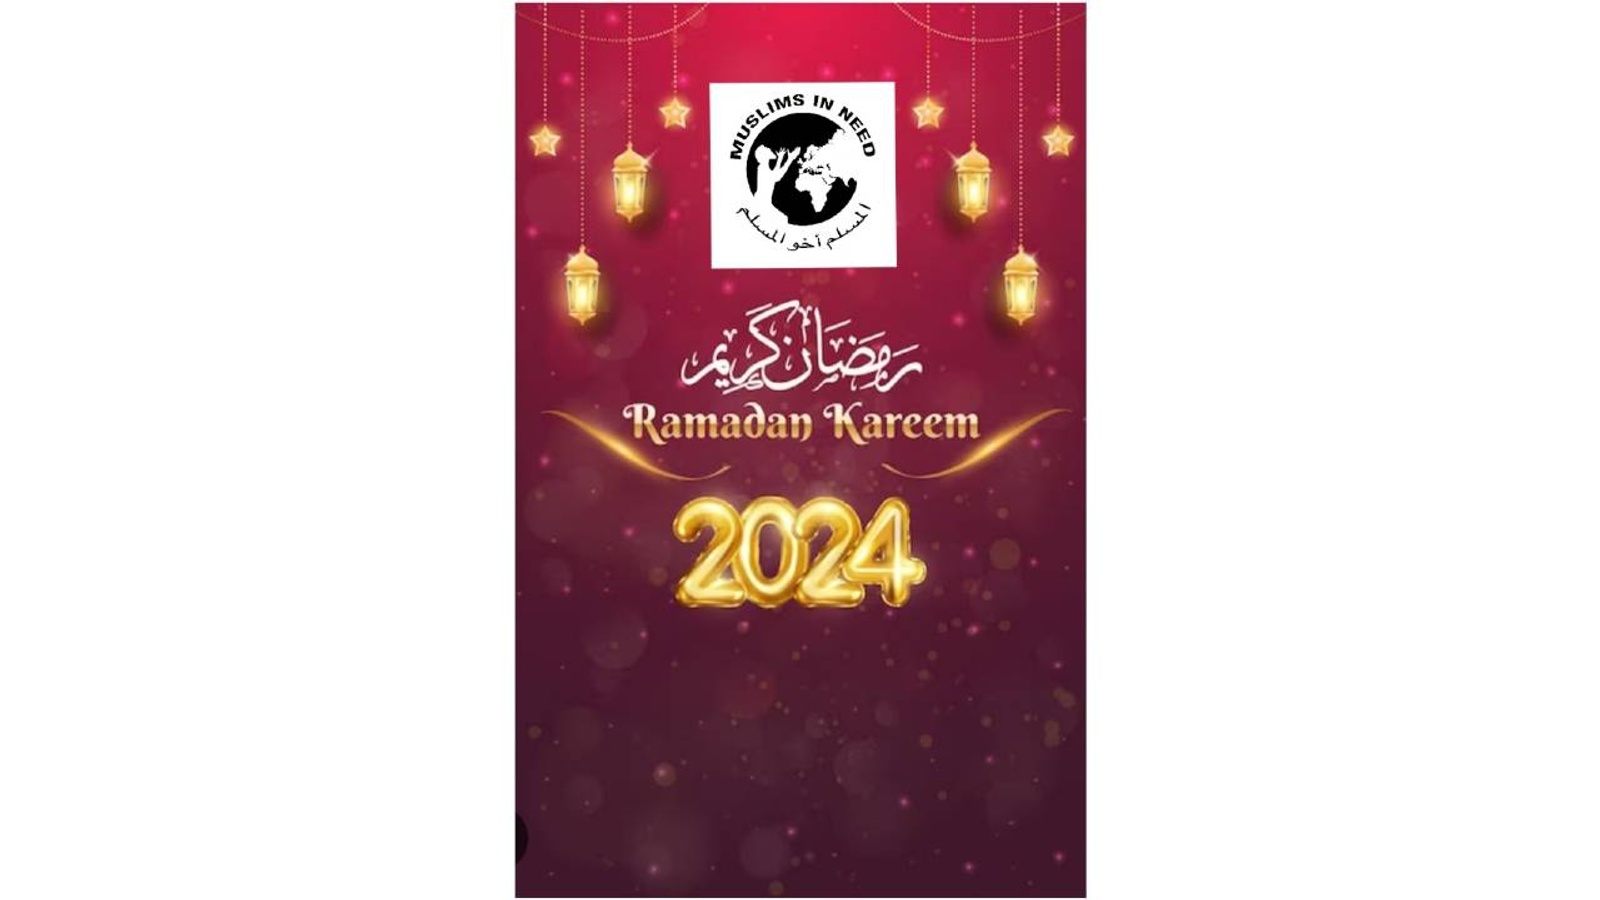 Worldwide Iftars Ramadhan 2024